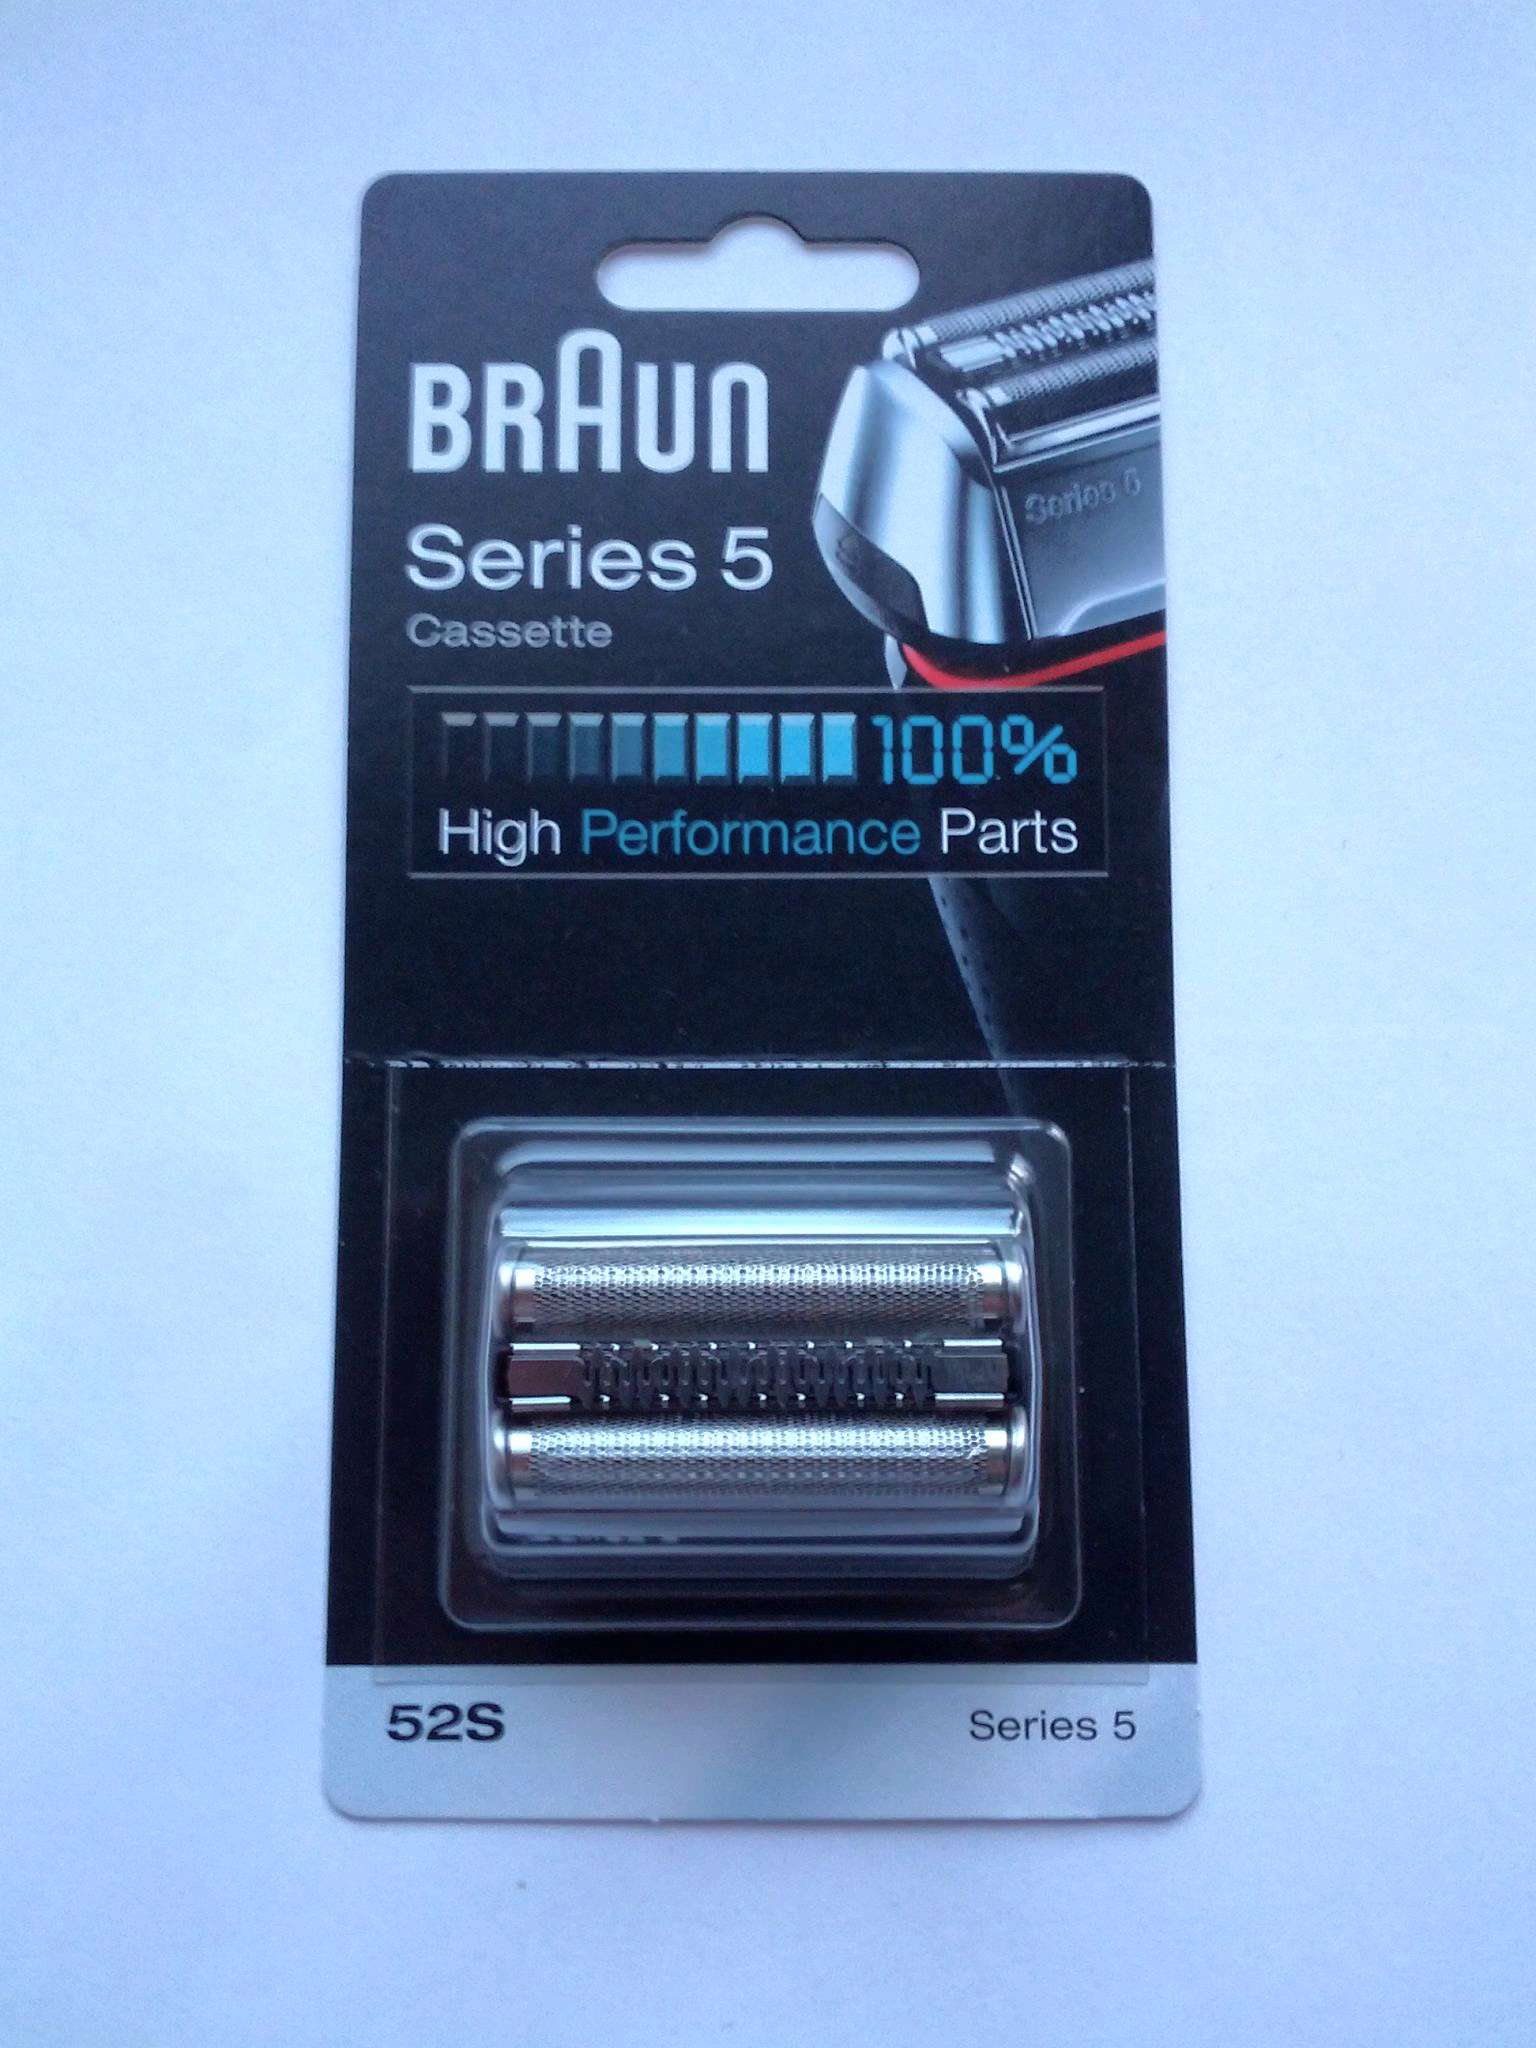 Сетка braun series 5. Сетка + режущий блок Braun 52s. Режущий блок Braun Series 5 52s. Сетка и режущий блок Braun 52b. Сетка и режущий блок Braun series5 52b.